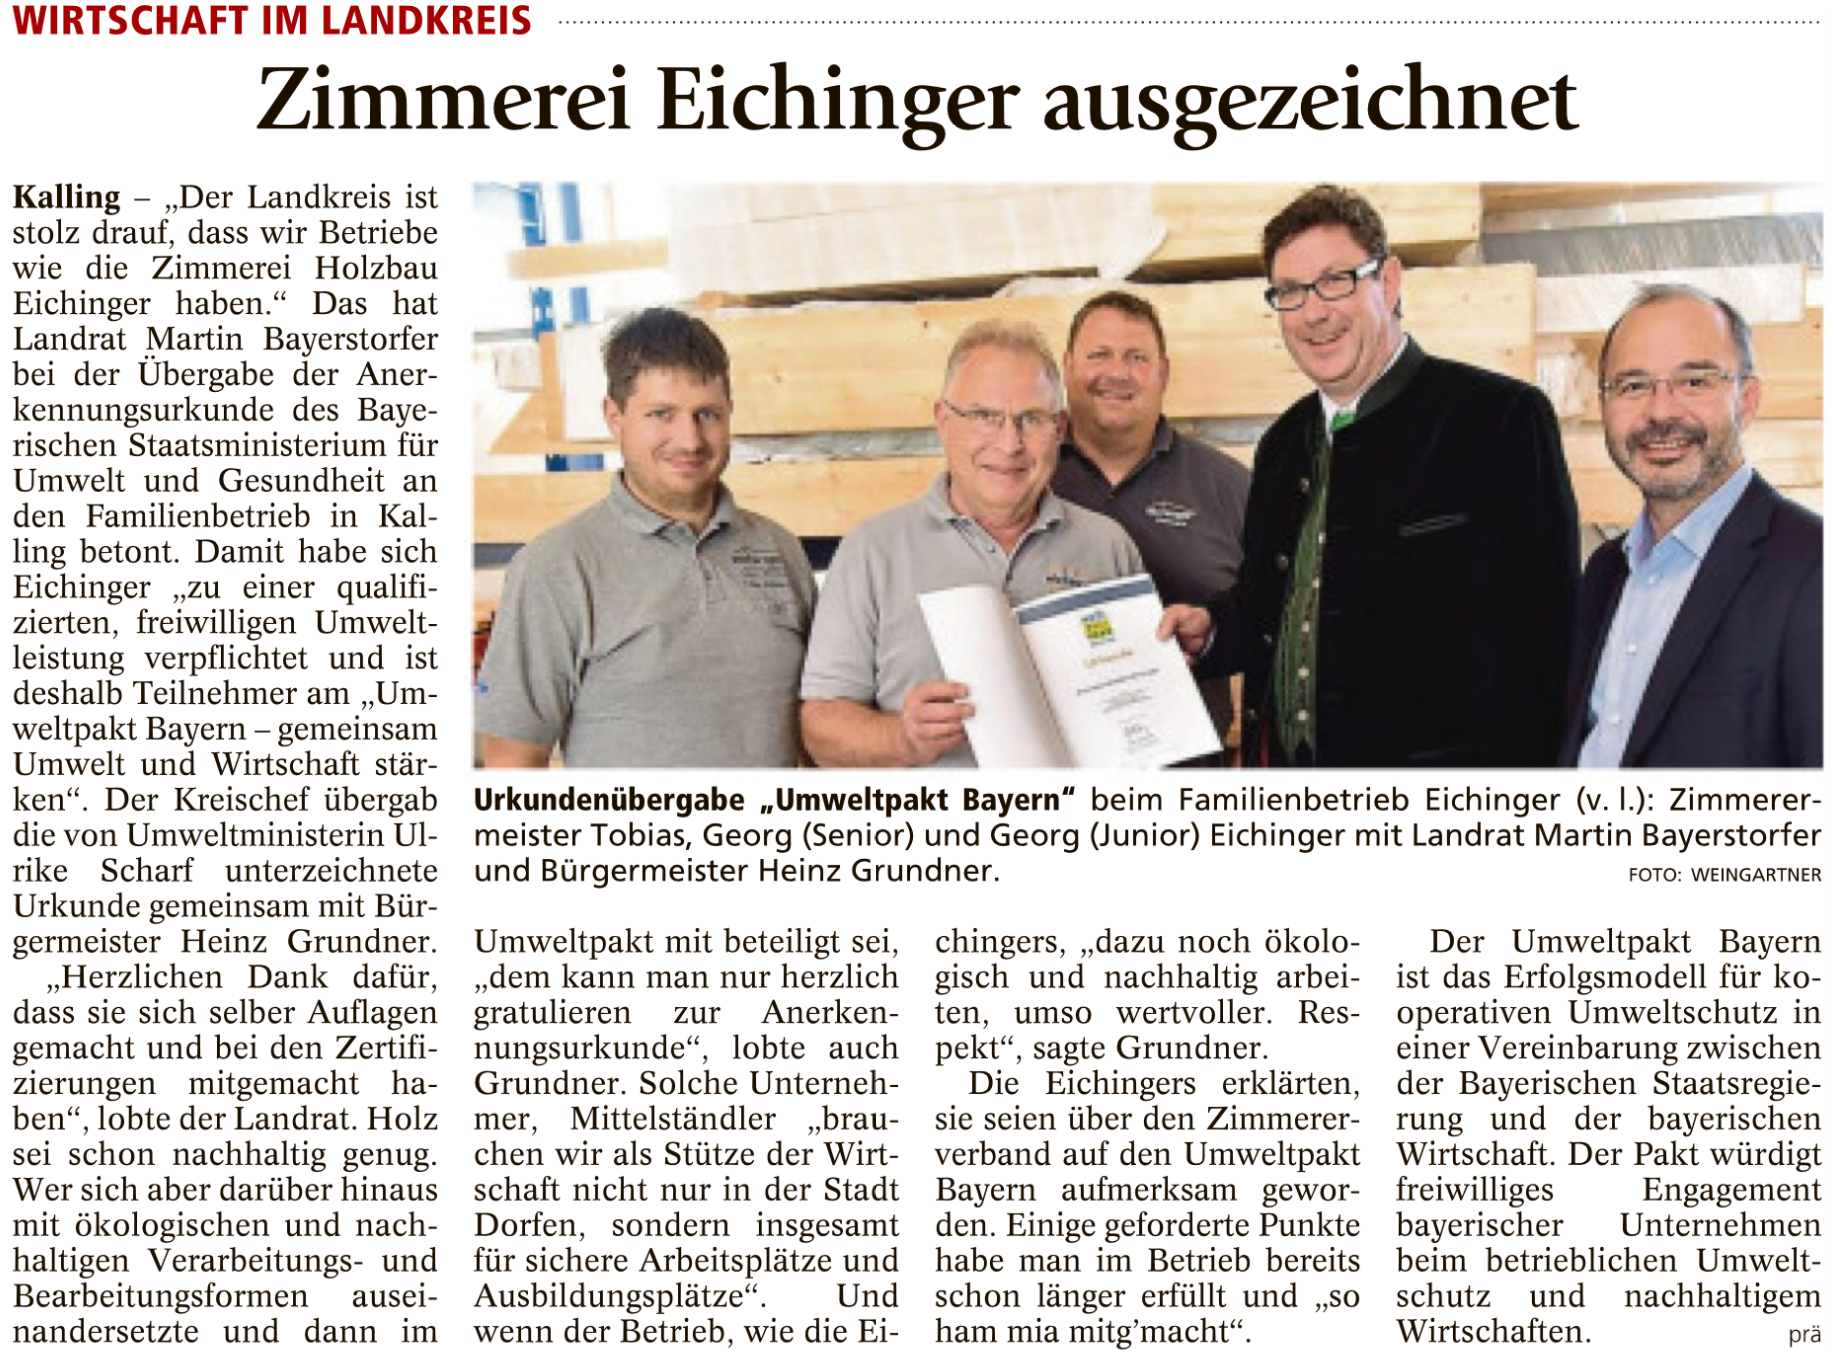 Eichinger Presse Umweltpakt 2017